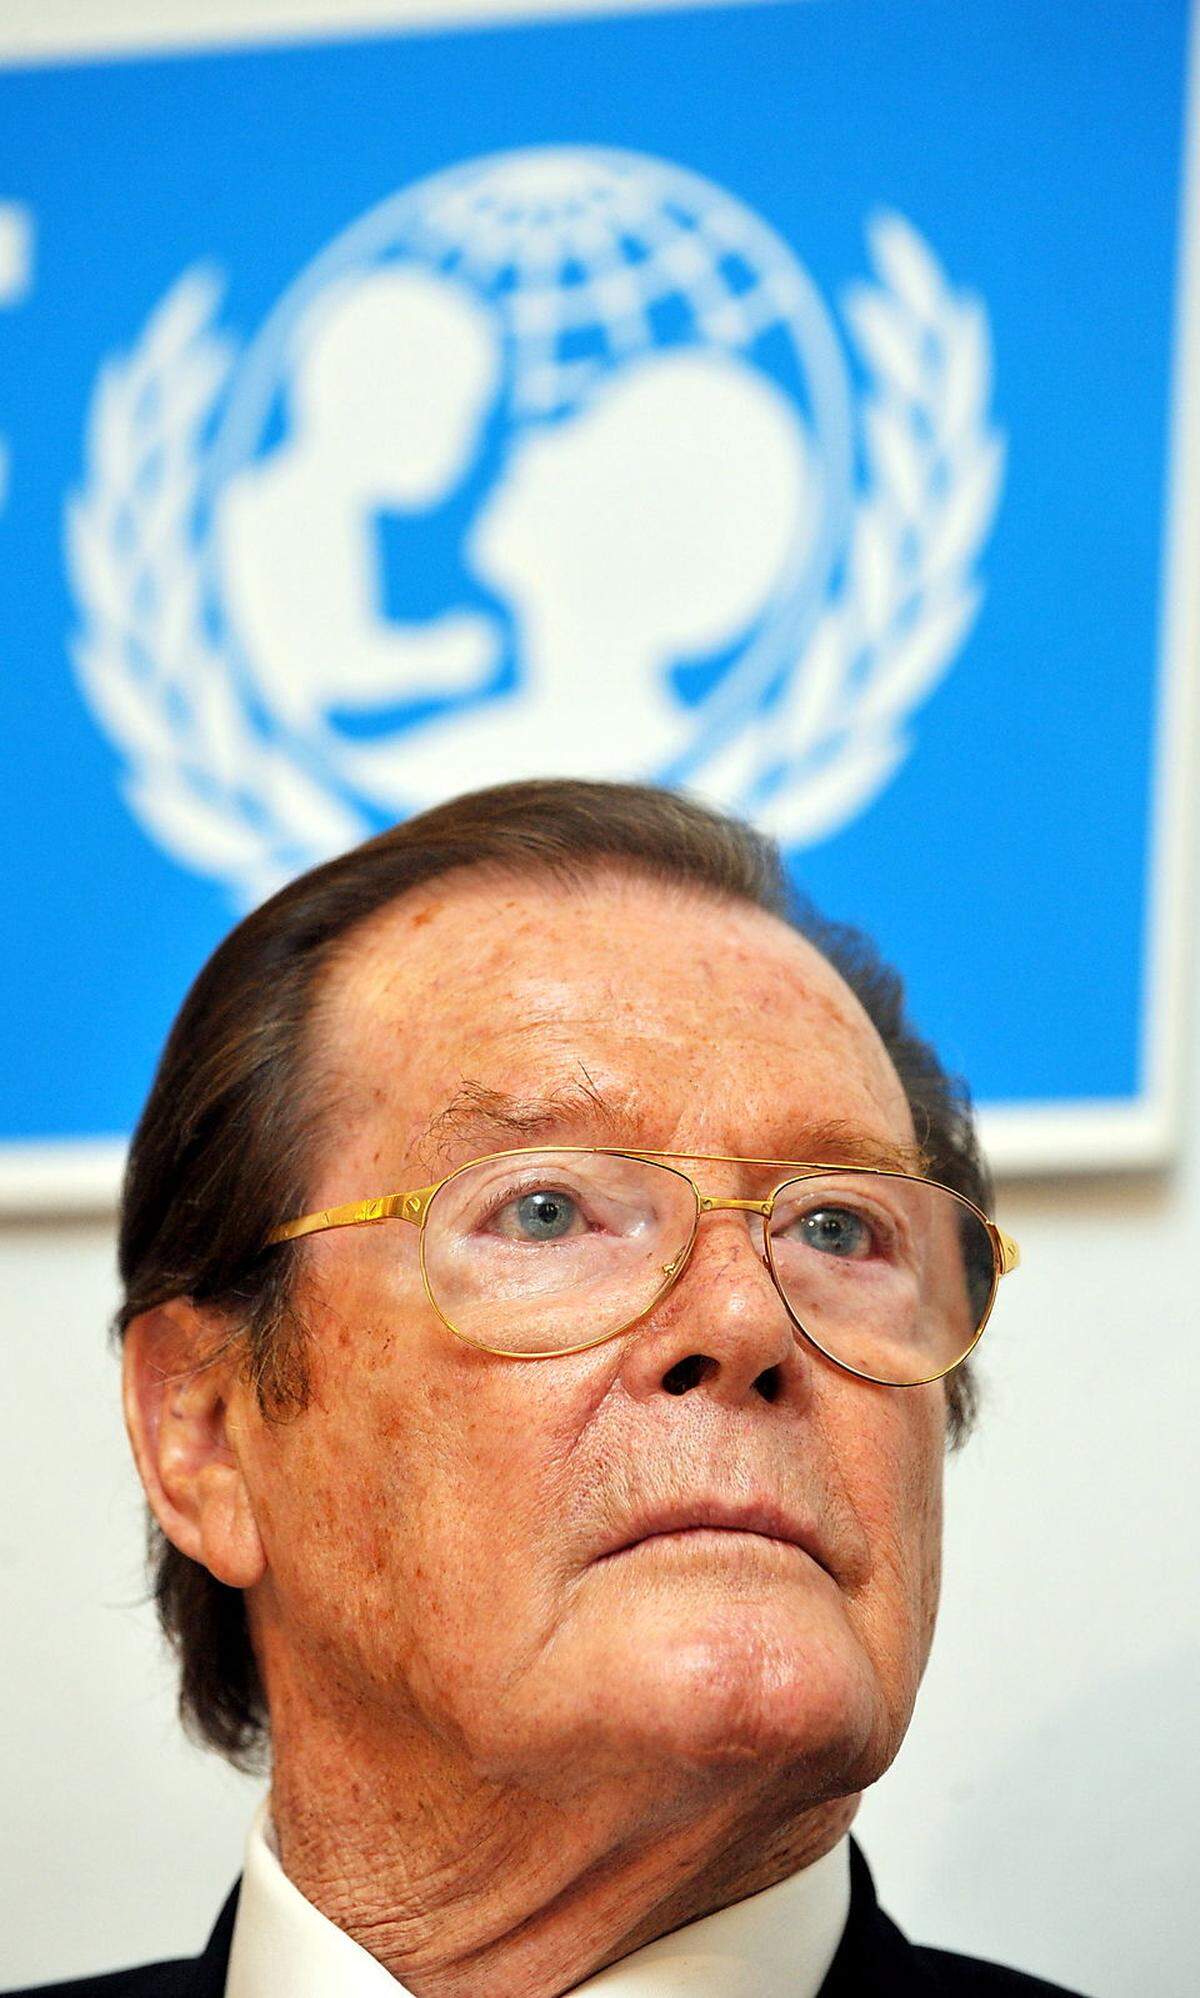  Seit den 1990er-Jahren hatte sich Moore vor allem auf sein soziales Engagement als UN-Sonderbotschafter für das Kinderhilfswerk Unicef engagiert, das er als seine "größte Errungenschaft" bezeichnete. Bild: Moore bei einer Unicef-Pressekonferenz im Jahr 2010